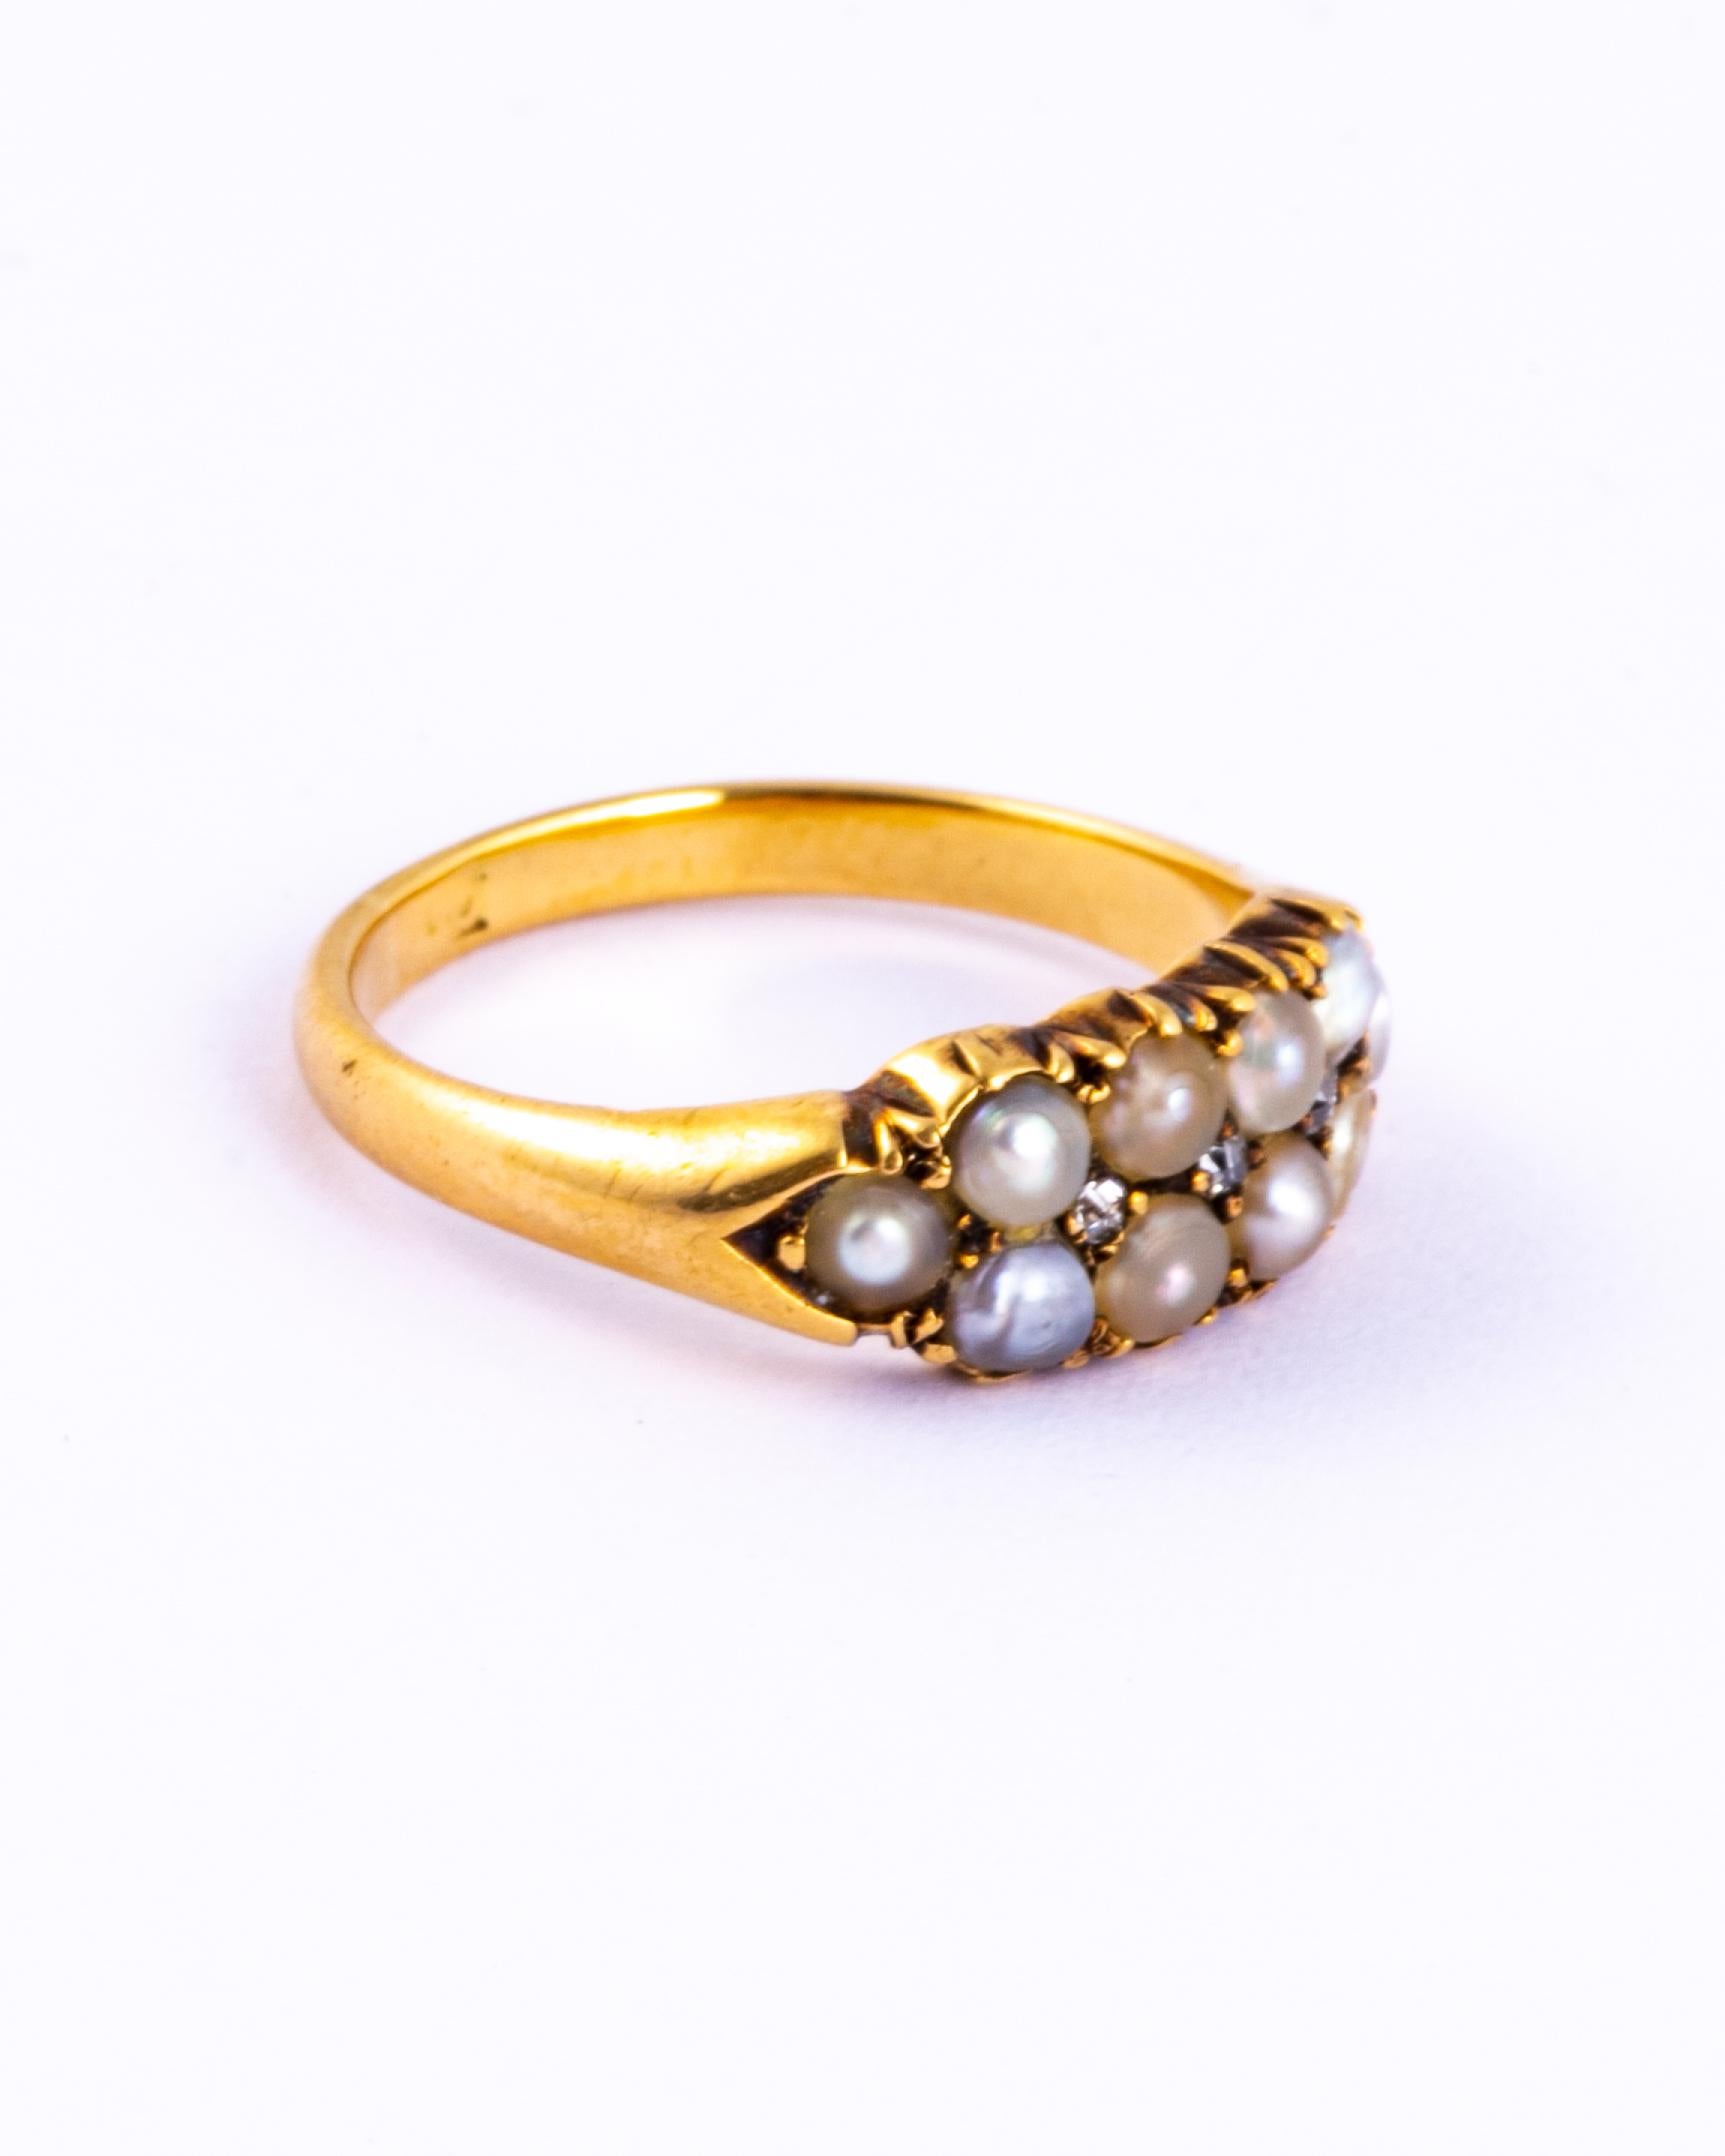 Dieser süße Ring enthält zwei Reihen von Perlen und dazwischen eine Reihe von drei Diamanten im Rosenschliff, die diesem Ring die perfekte Menge an Glanz verleihen. 

Größe: K 1/2 oder 5 1/2 
Breite: 6,5 mm

Gewicht: 4 Gramm